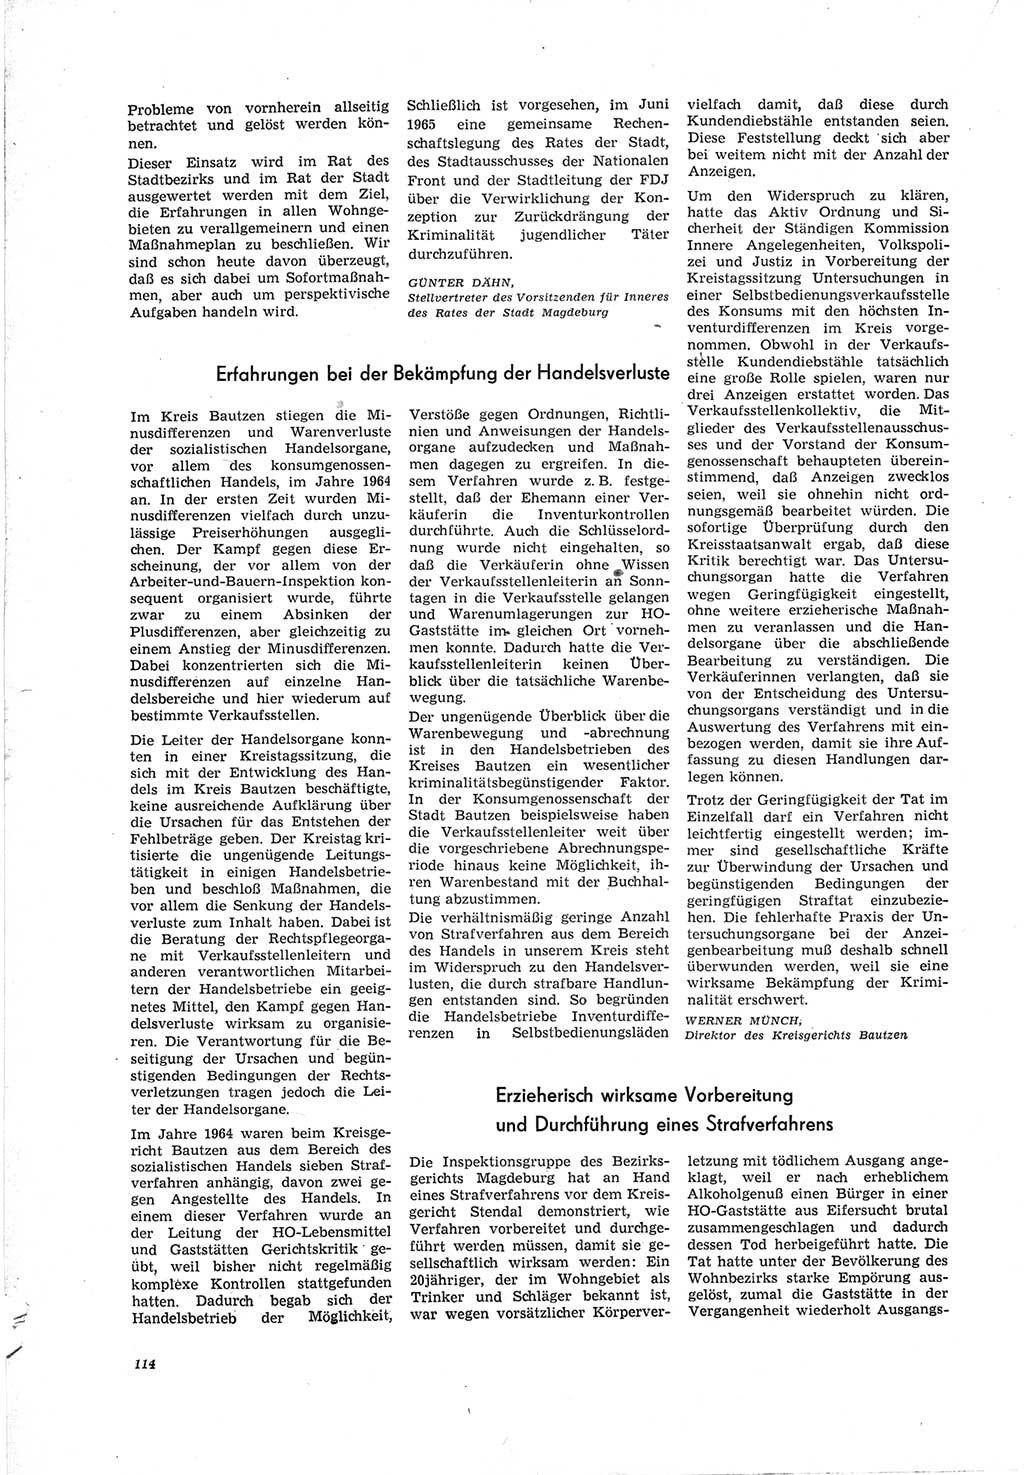 Neue Justiz (NJ), Zeitschrift für Recht und Rechtswissenschaft [Deutsche Demokratische Republik (DDR)], 19. Jahrgang 1965, Seite 114 (NJ DDR 1965, S. 114)